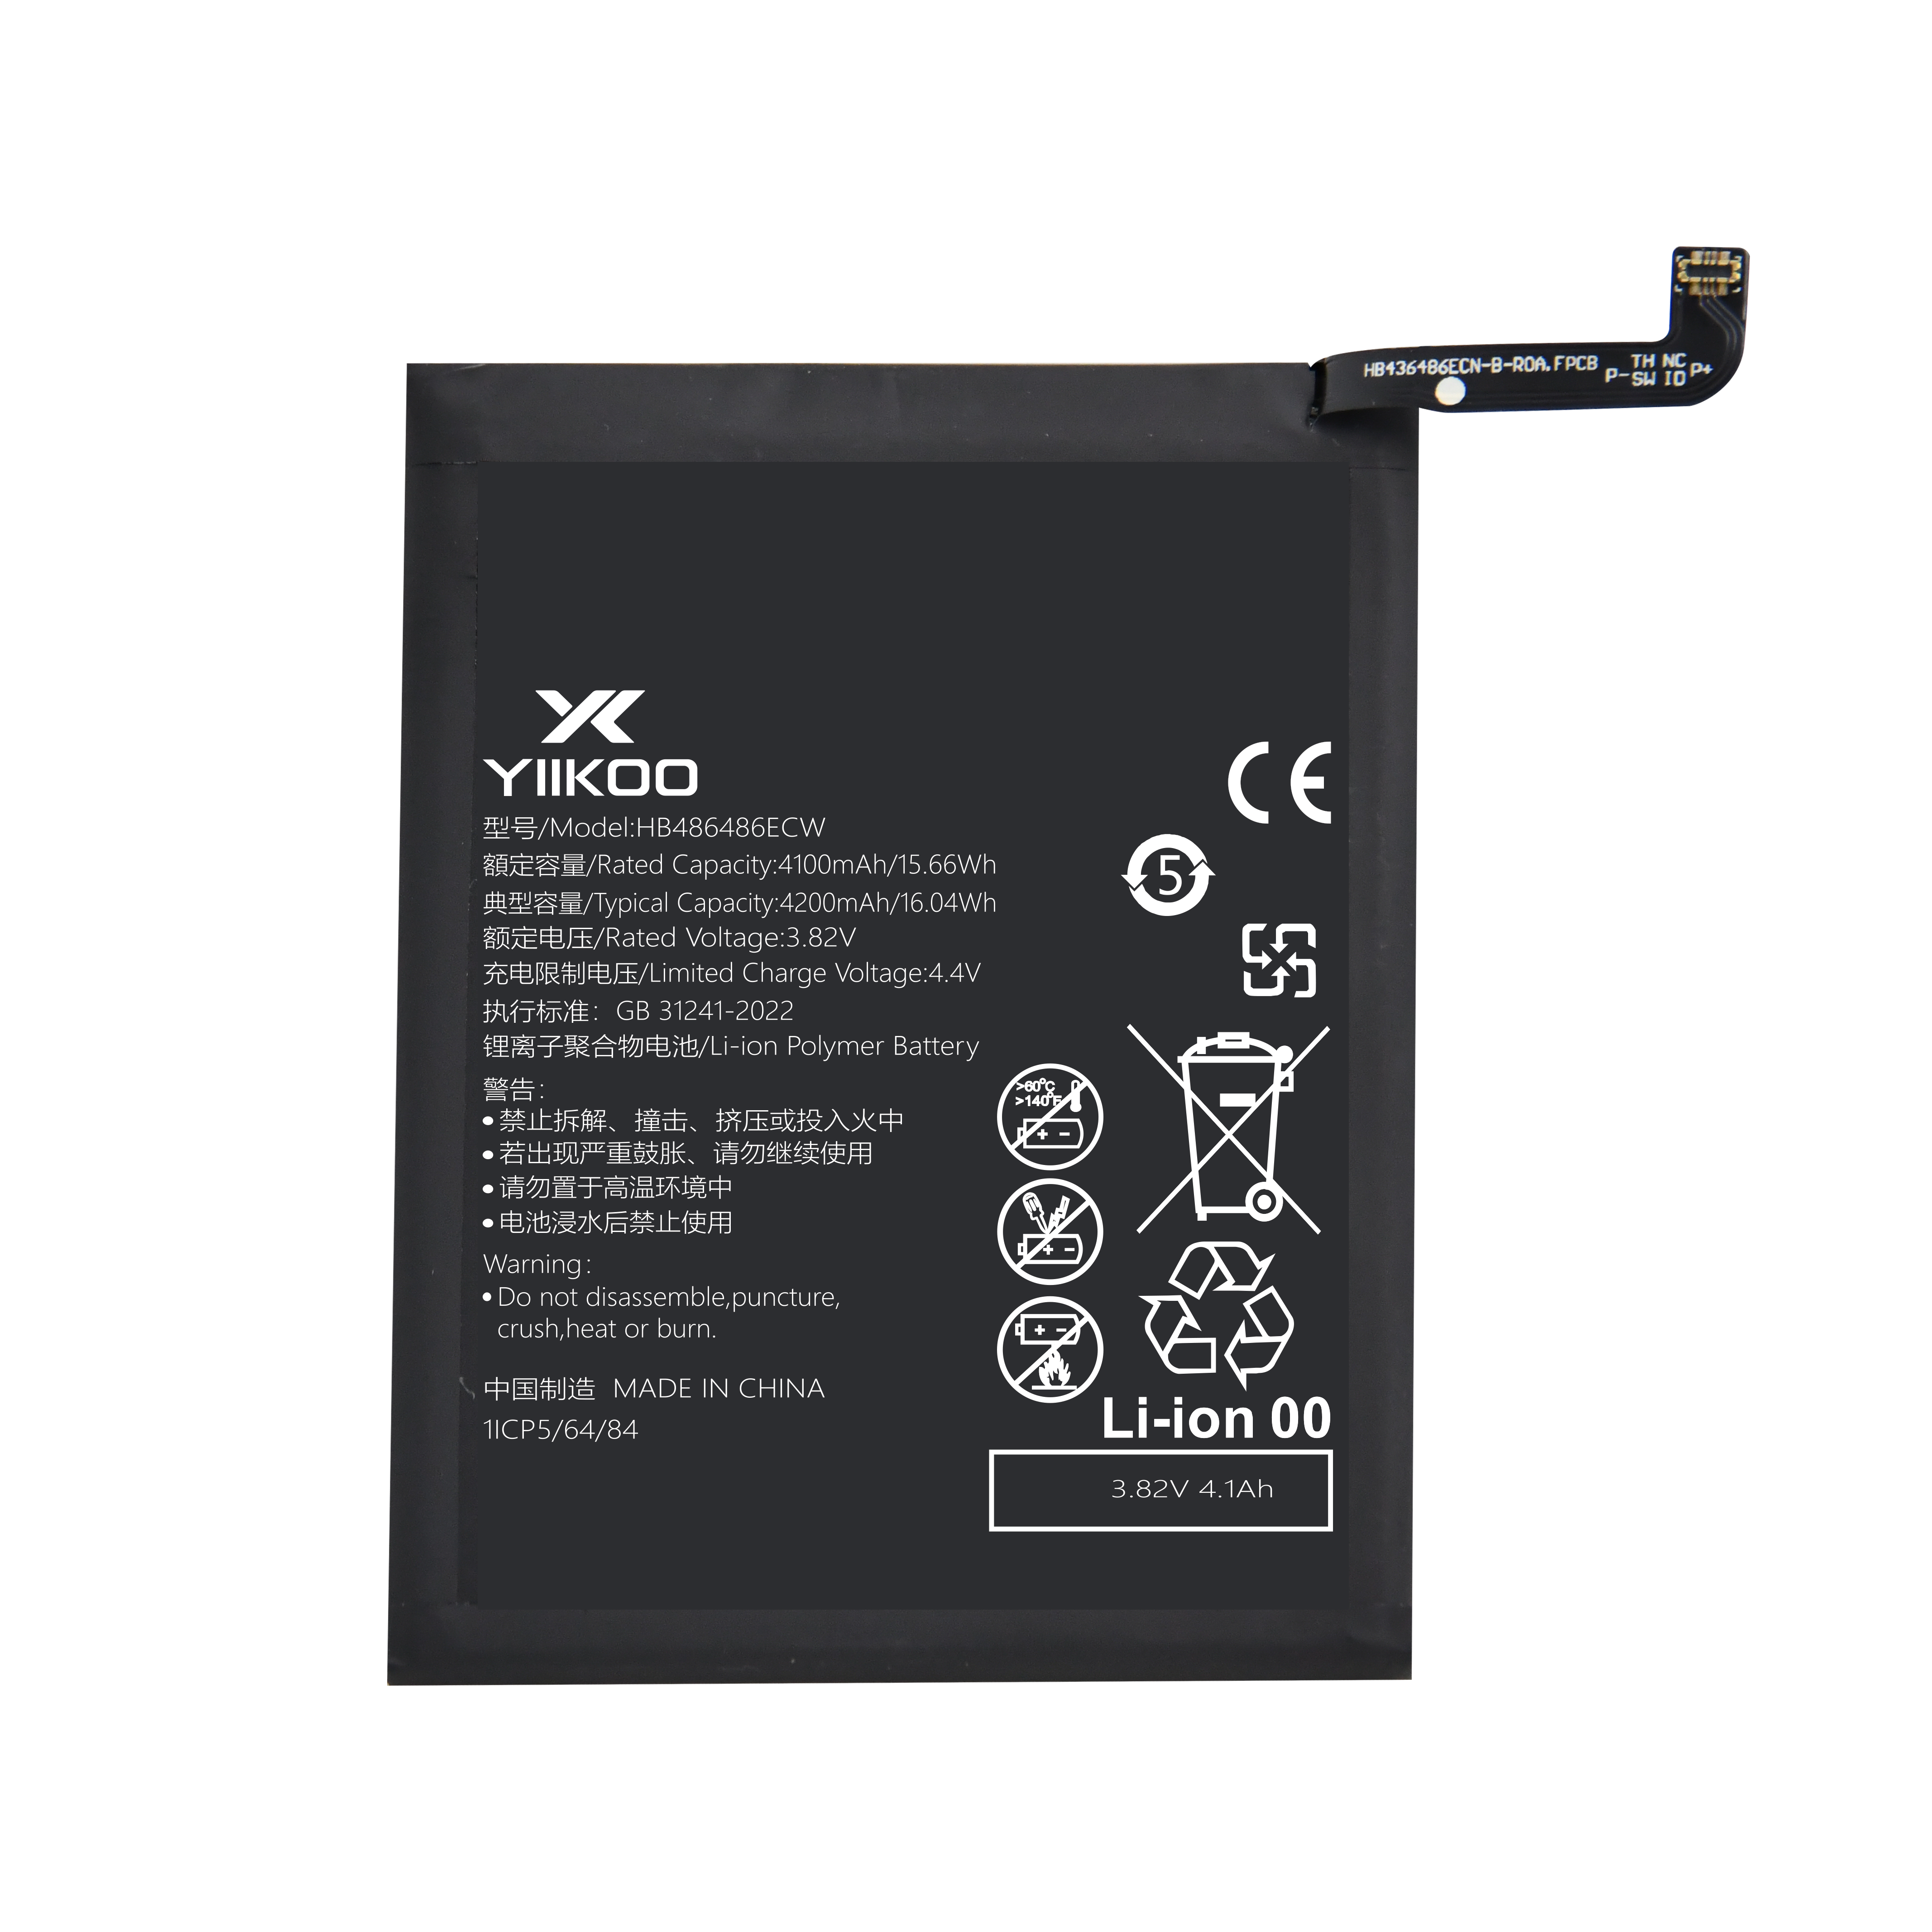 Huawei P30 pro/mate20pro/Mate20X 5G Battery (4100mAh) HB486486ECW